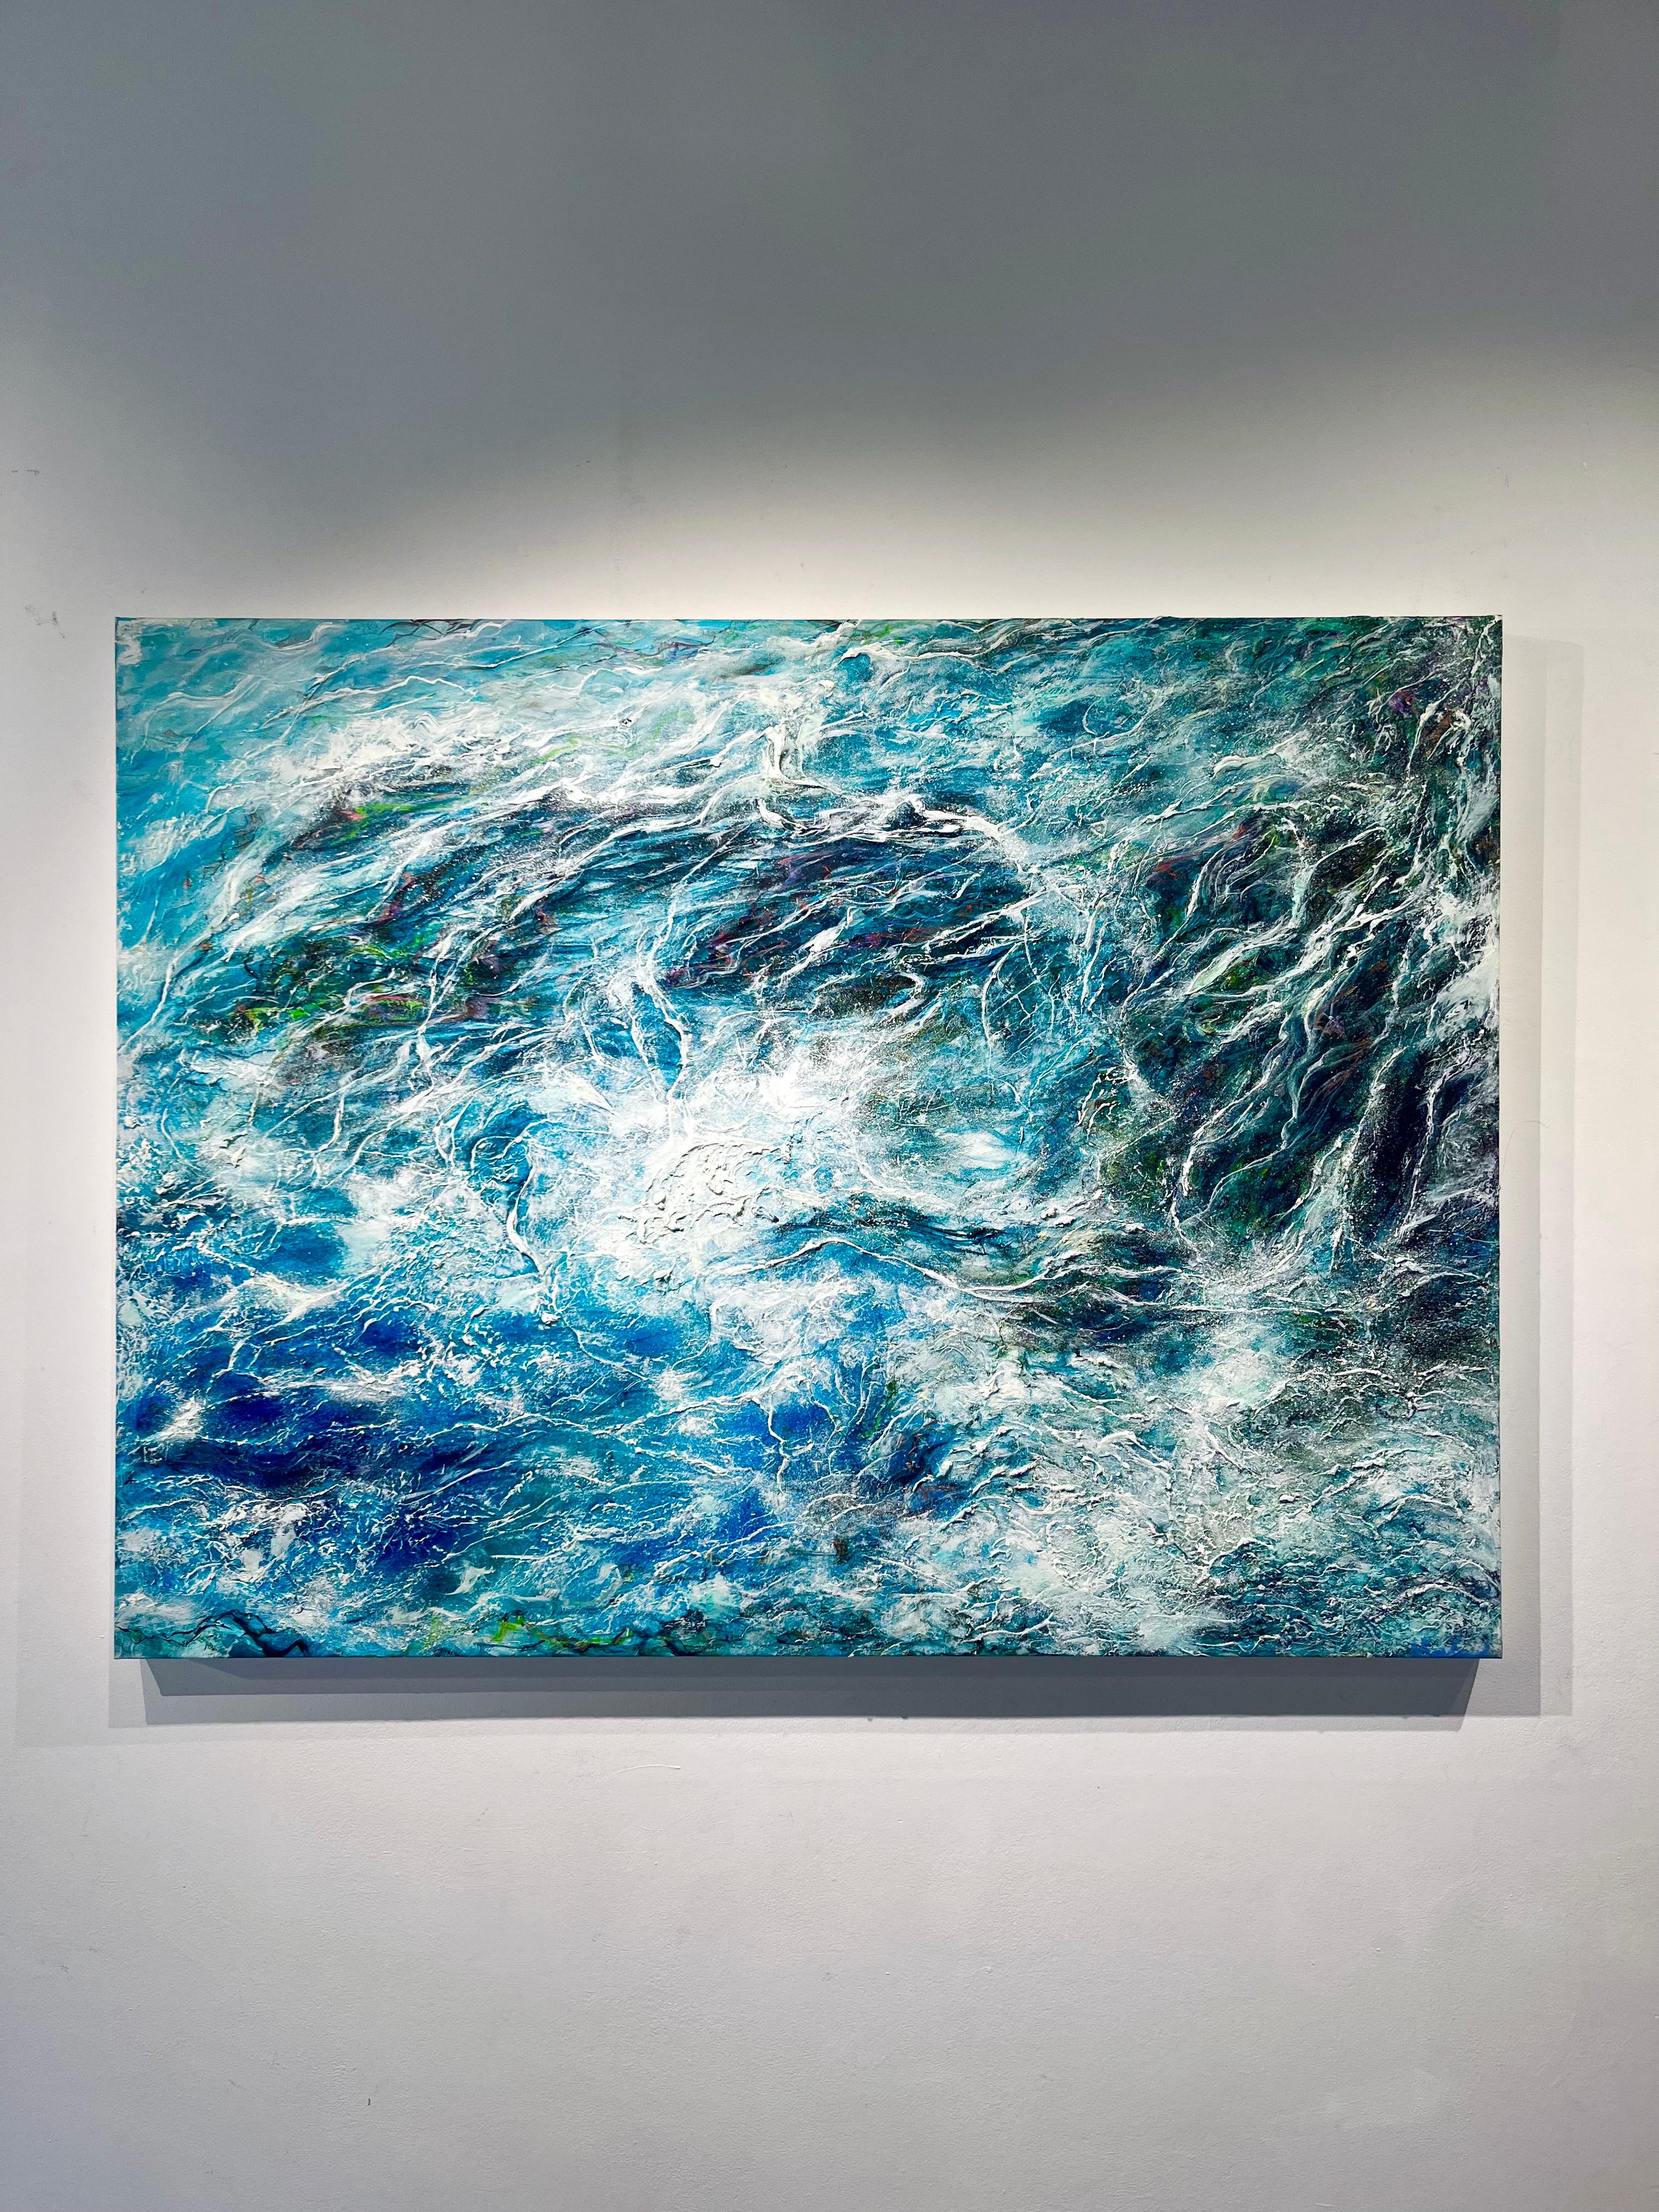 Kelp Web-originale moderne abstrakte Meereslandschaft-Ozean-Ölgemälde-zeitgenössische Kunst (Realismus), Painting, von Nikki Baxendale